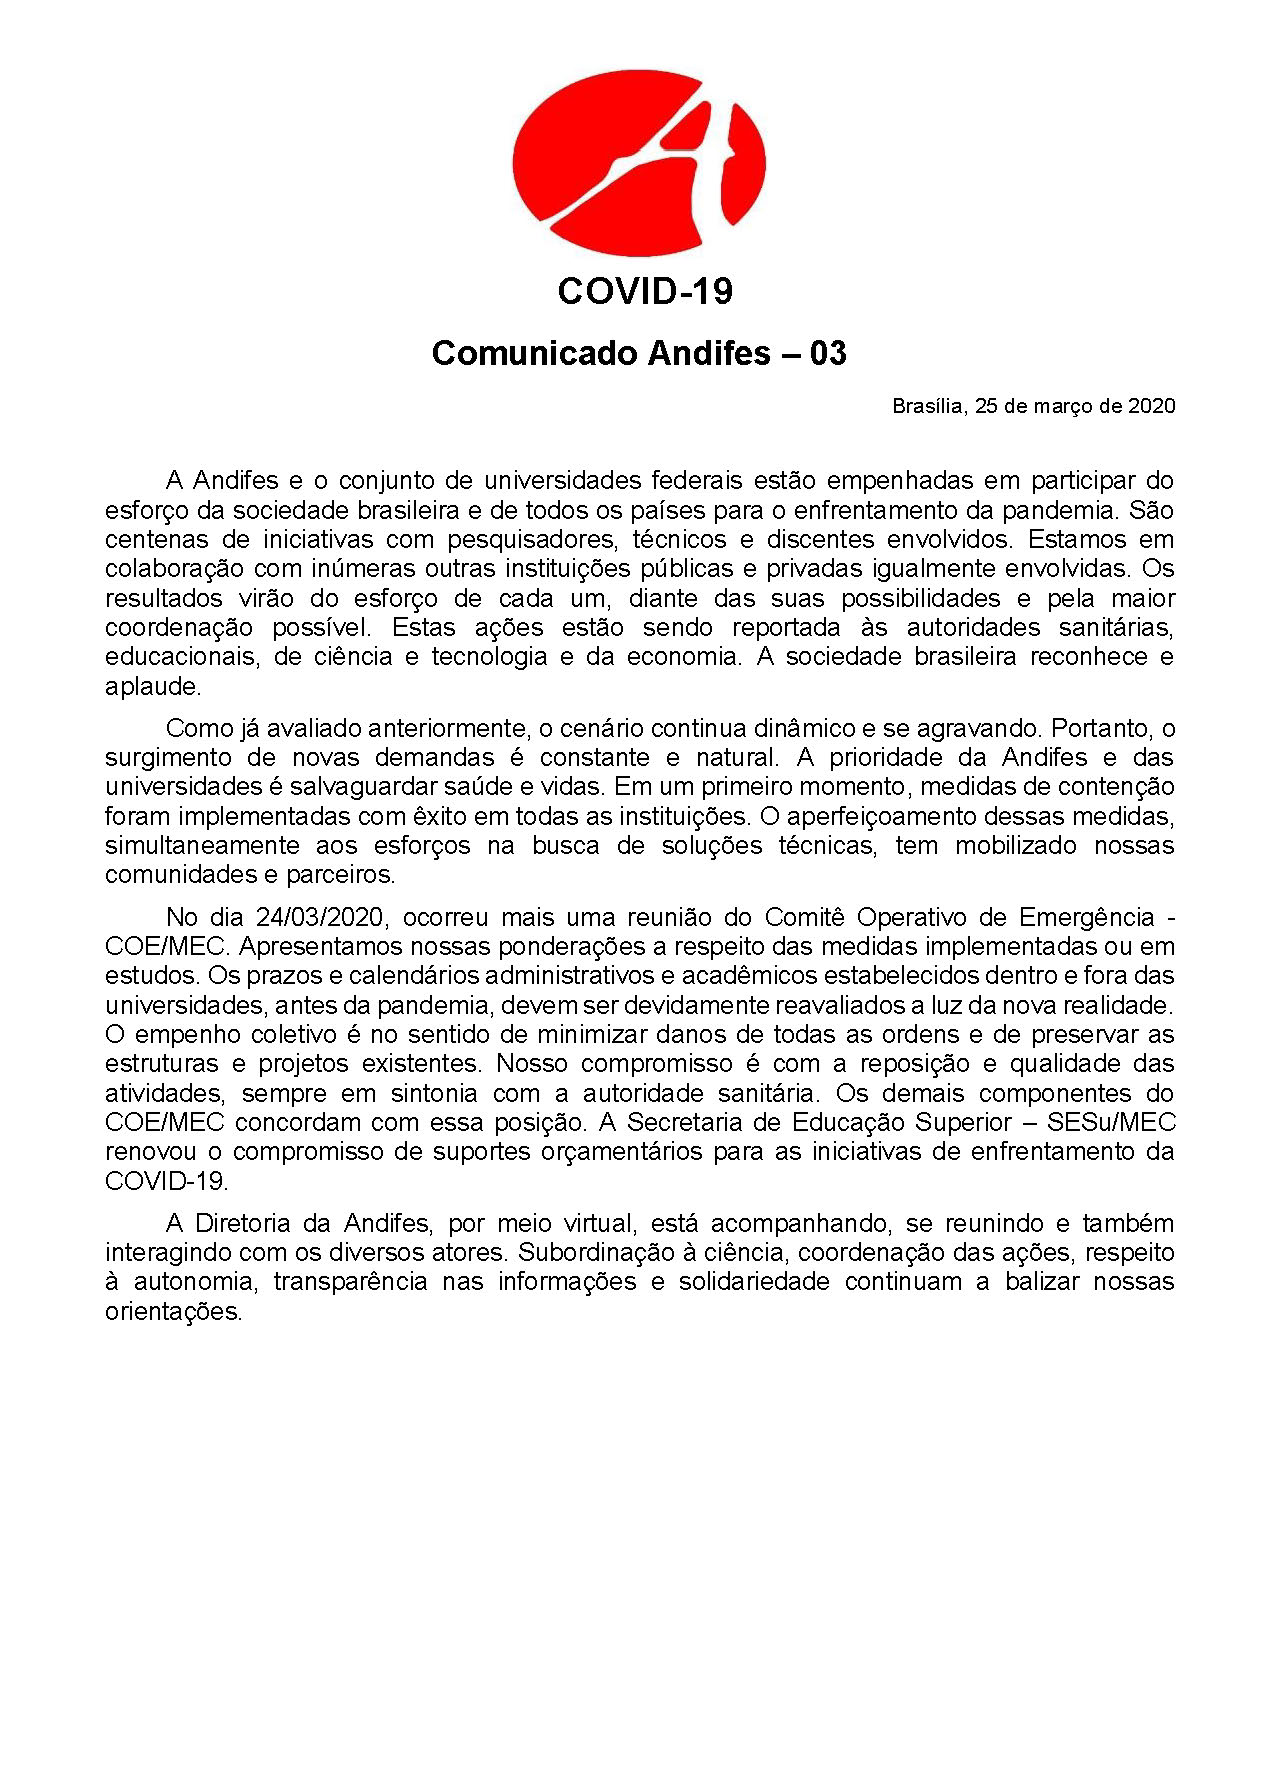 Comunicado ANDIFES 03